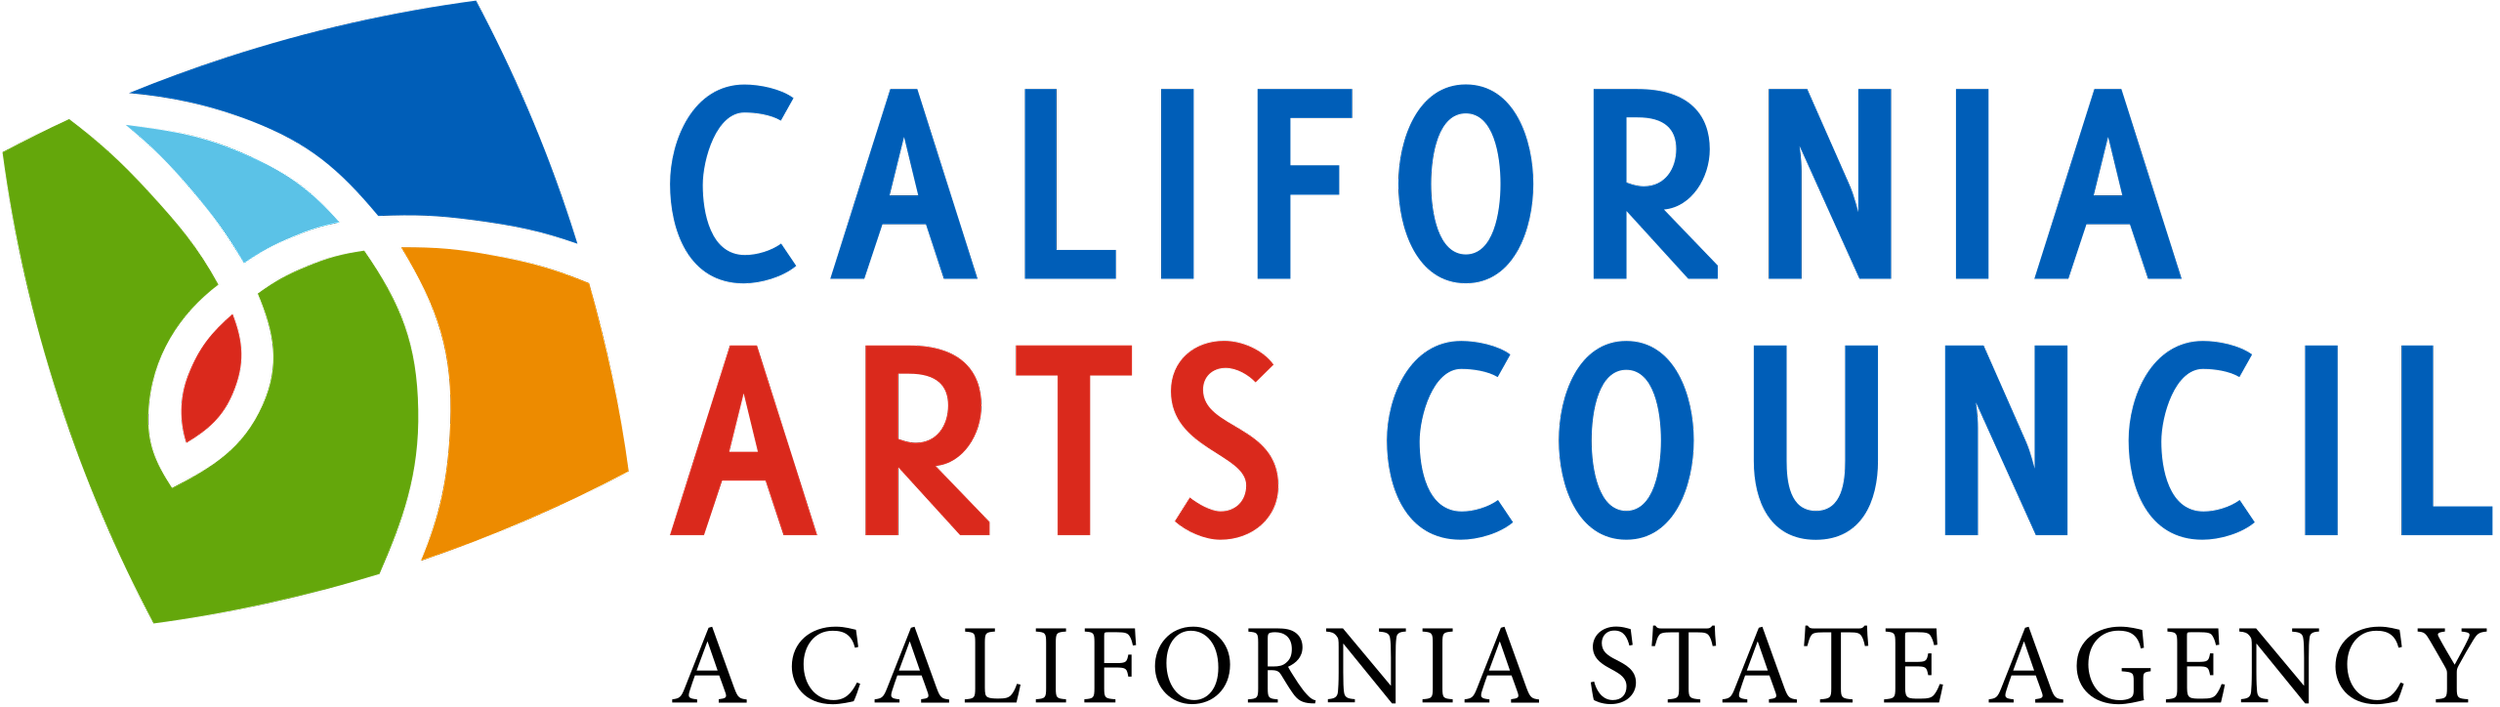 CALIFORNIA ARTS COUNCIL (Copy) (Copy)